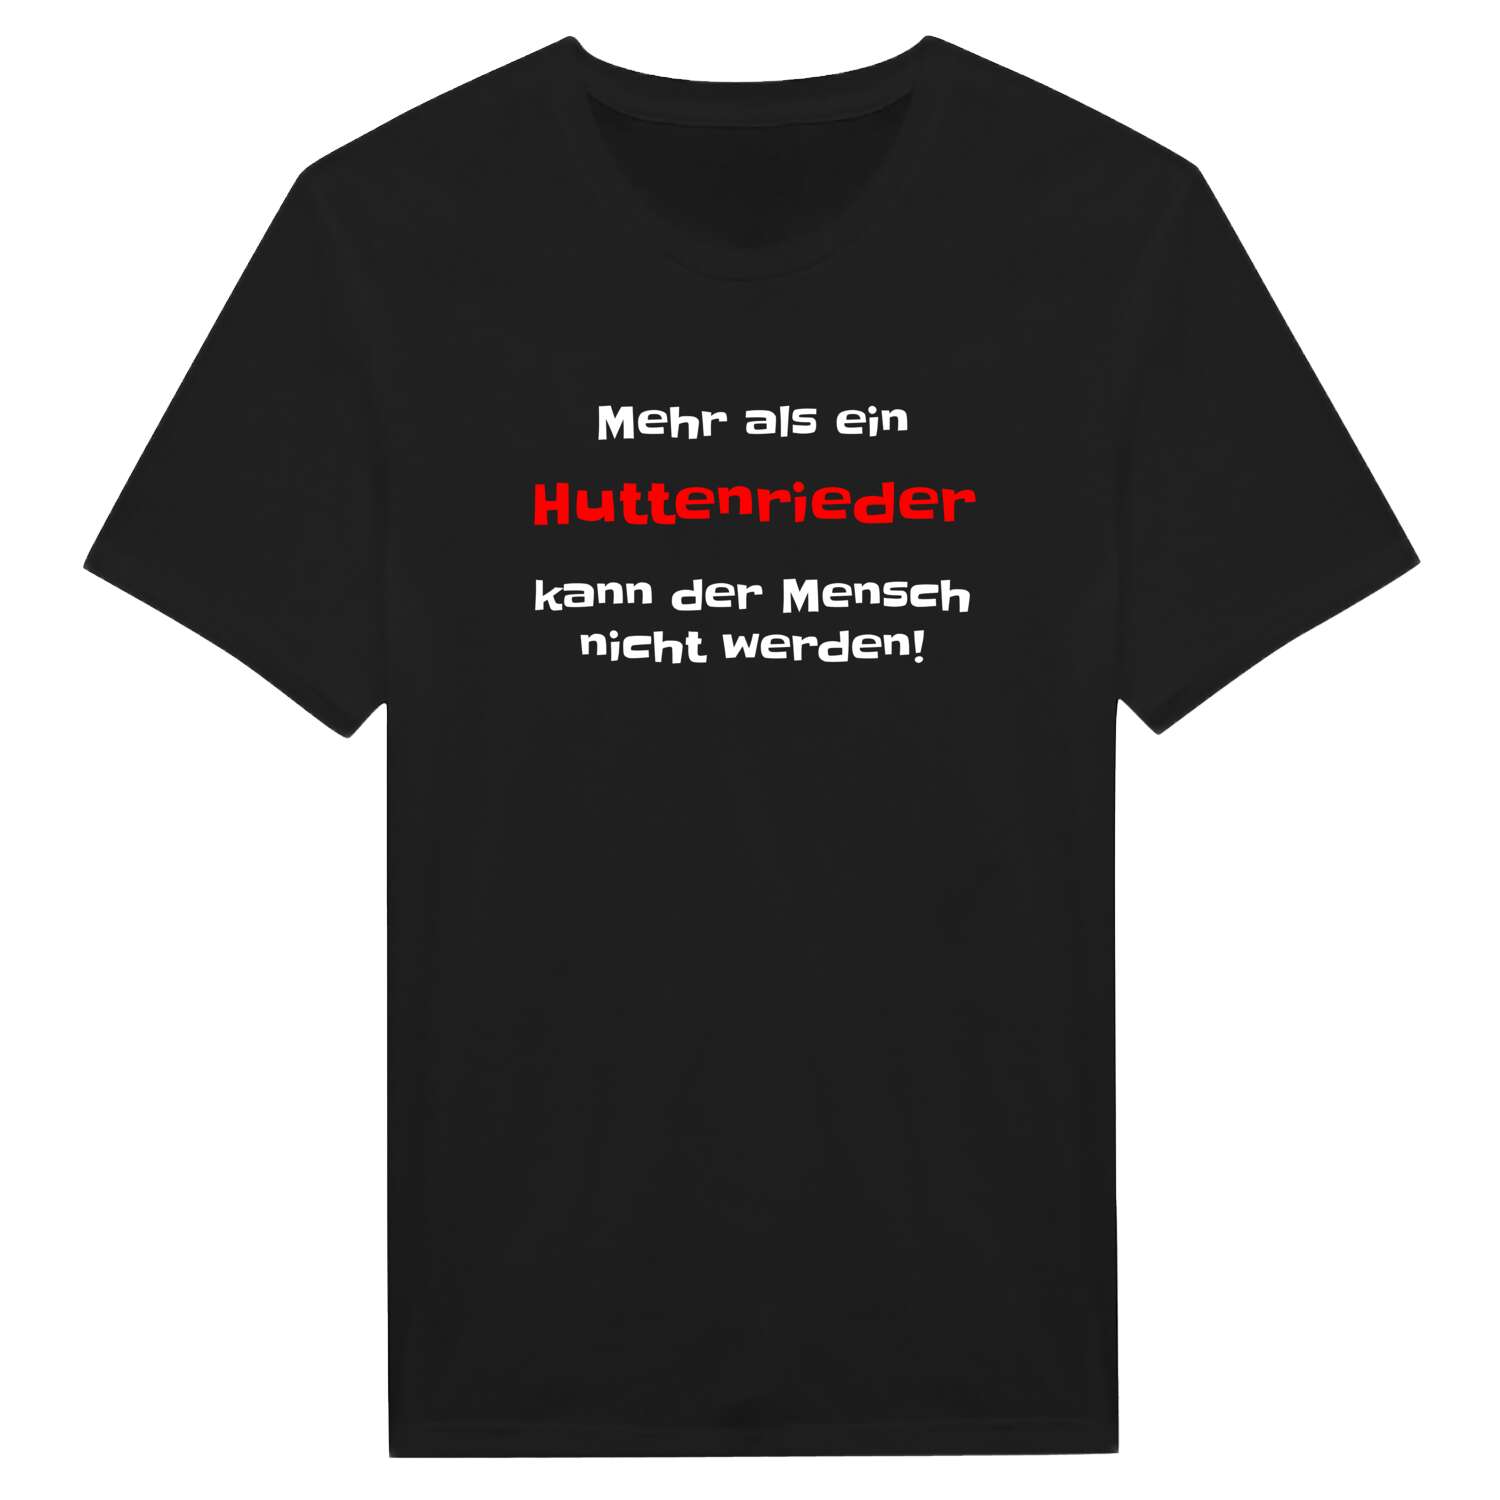 Huttenried T-Shirt »Mehr als ein«